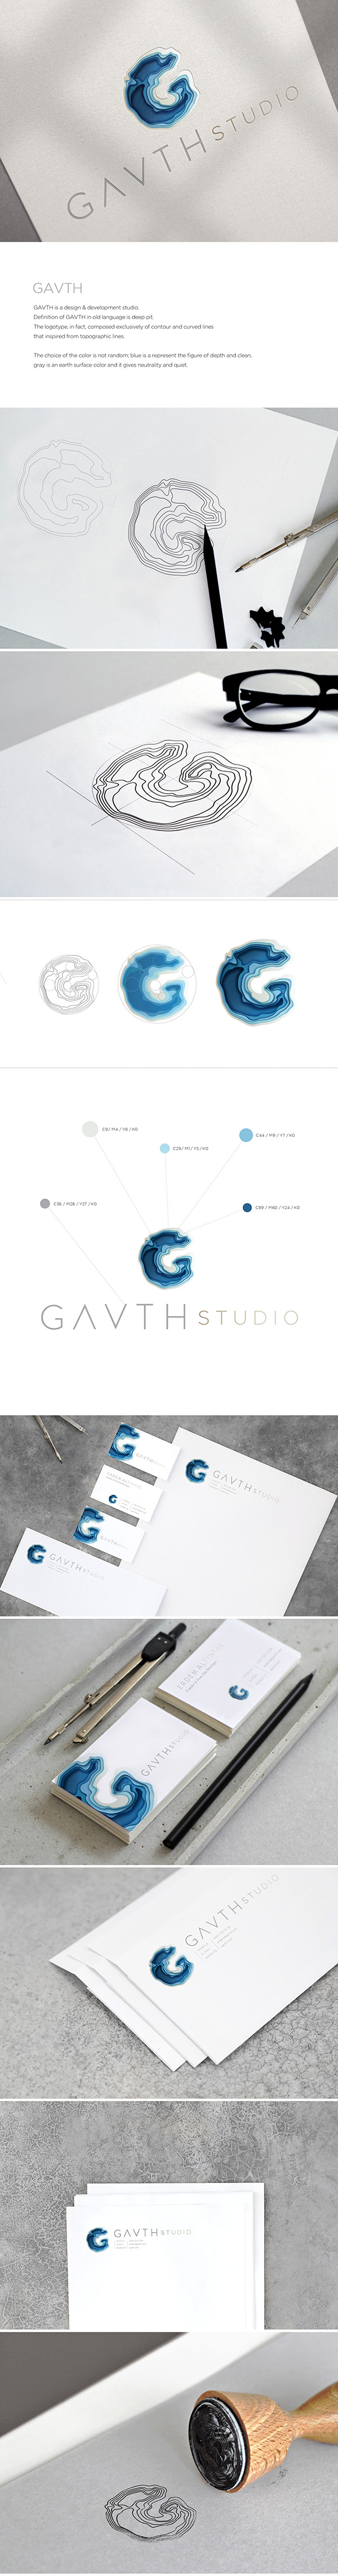 Gavth Studio Logo & Visual Identity